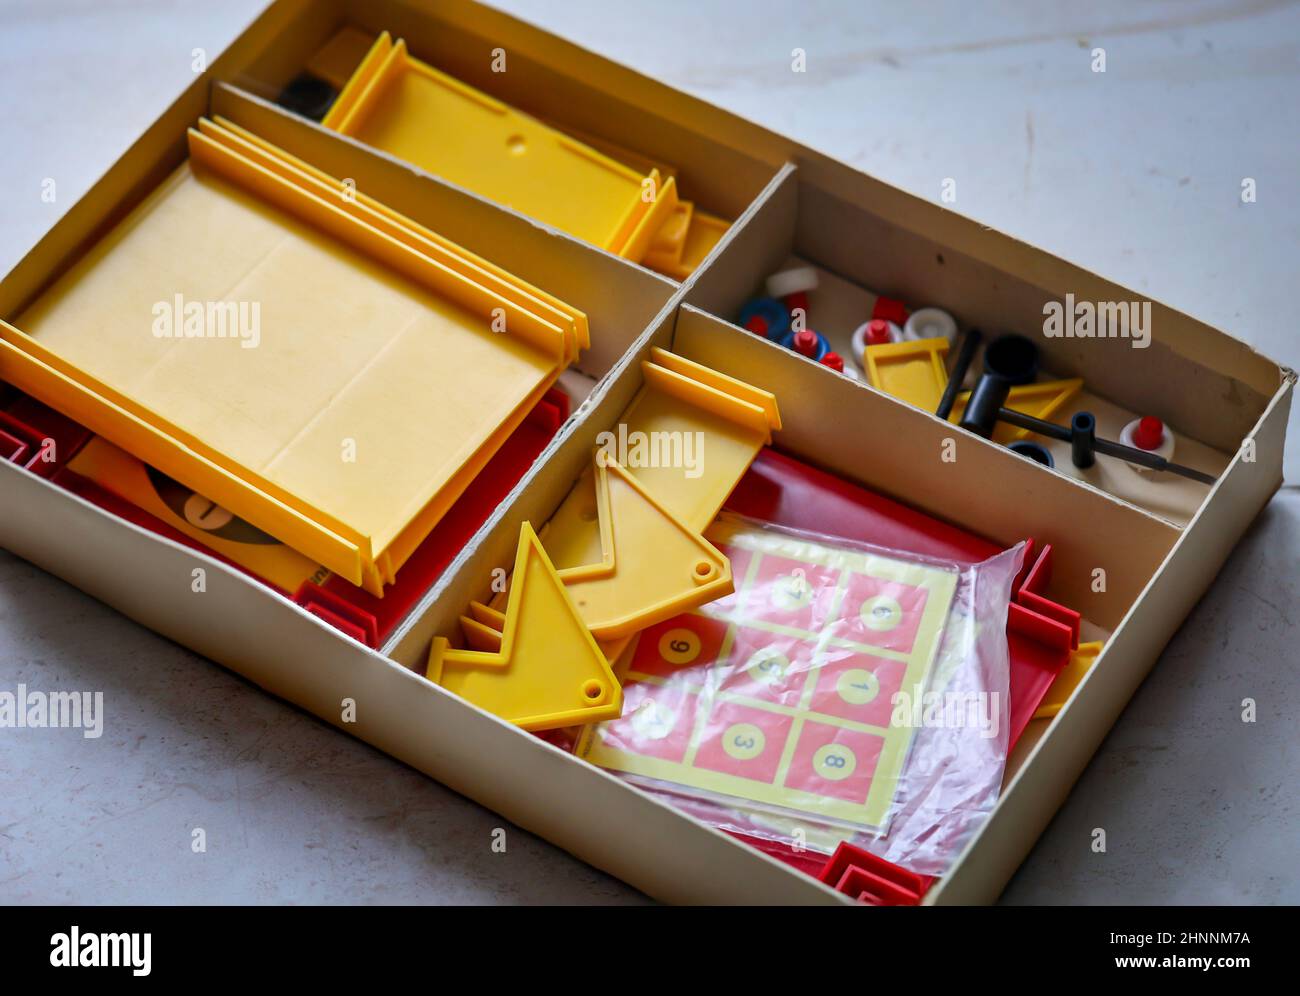 Una scatola con i giocattoli di plastica come il suo contenuto. Un giocattolo shuffle di GDR Times in una scatola di cartone. Foto Stock